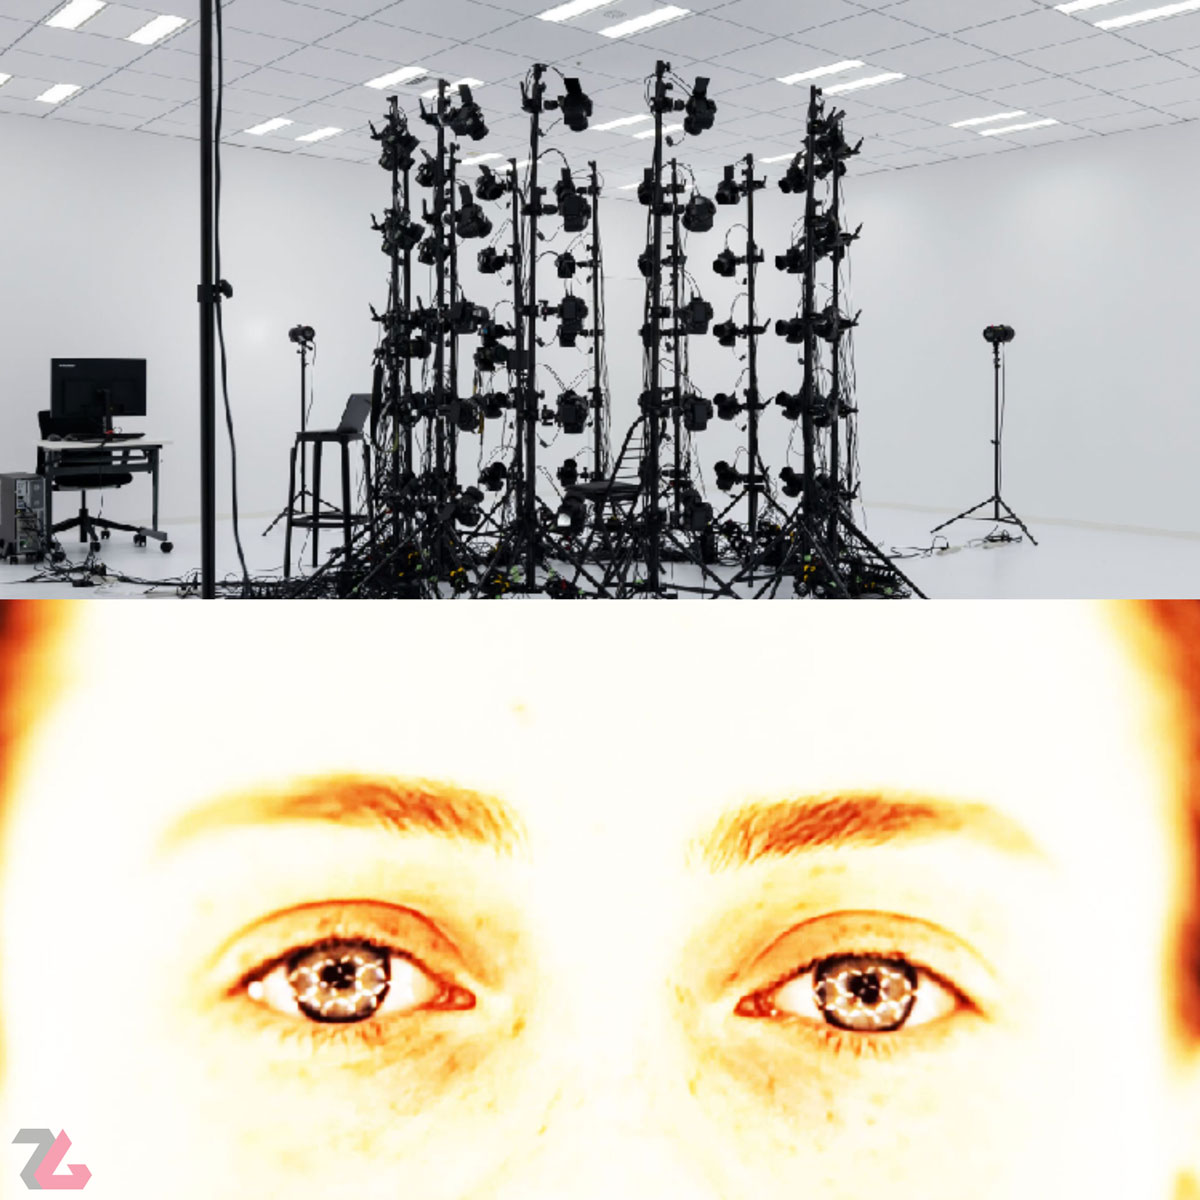 Une image du studio Kojima Productions et une image des sources lumineuses et de la structure du réseau dans les yeux de Sophia Lillis dans la bande-annonce du jeu Overdose de Hideo Kojima.